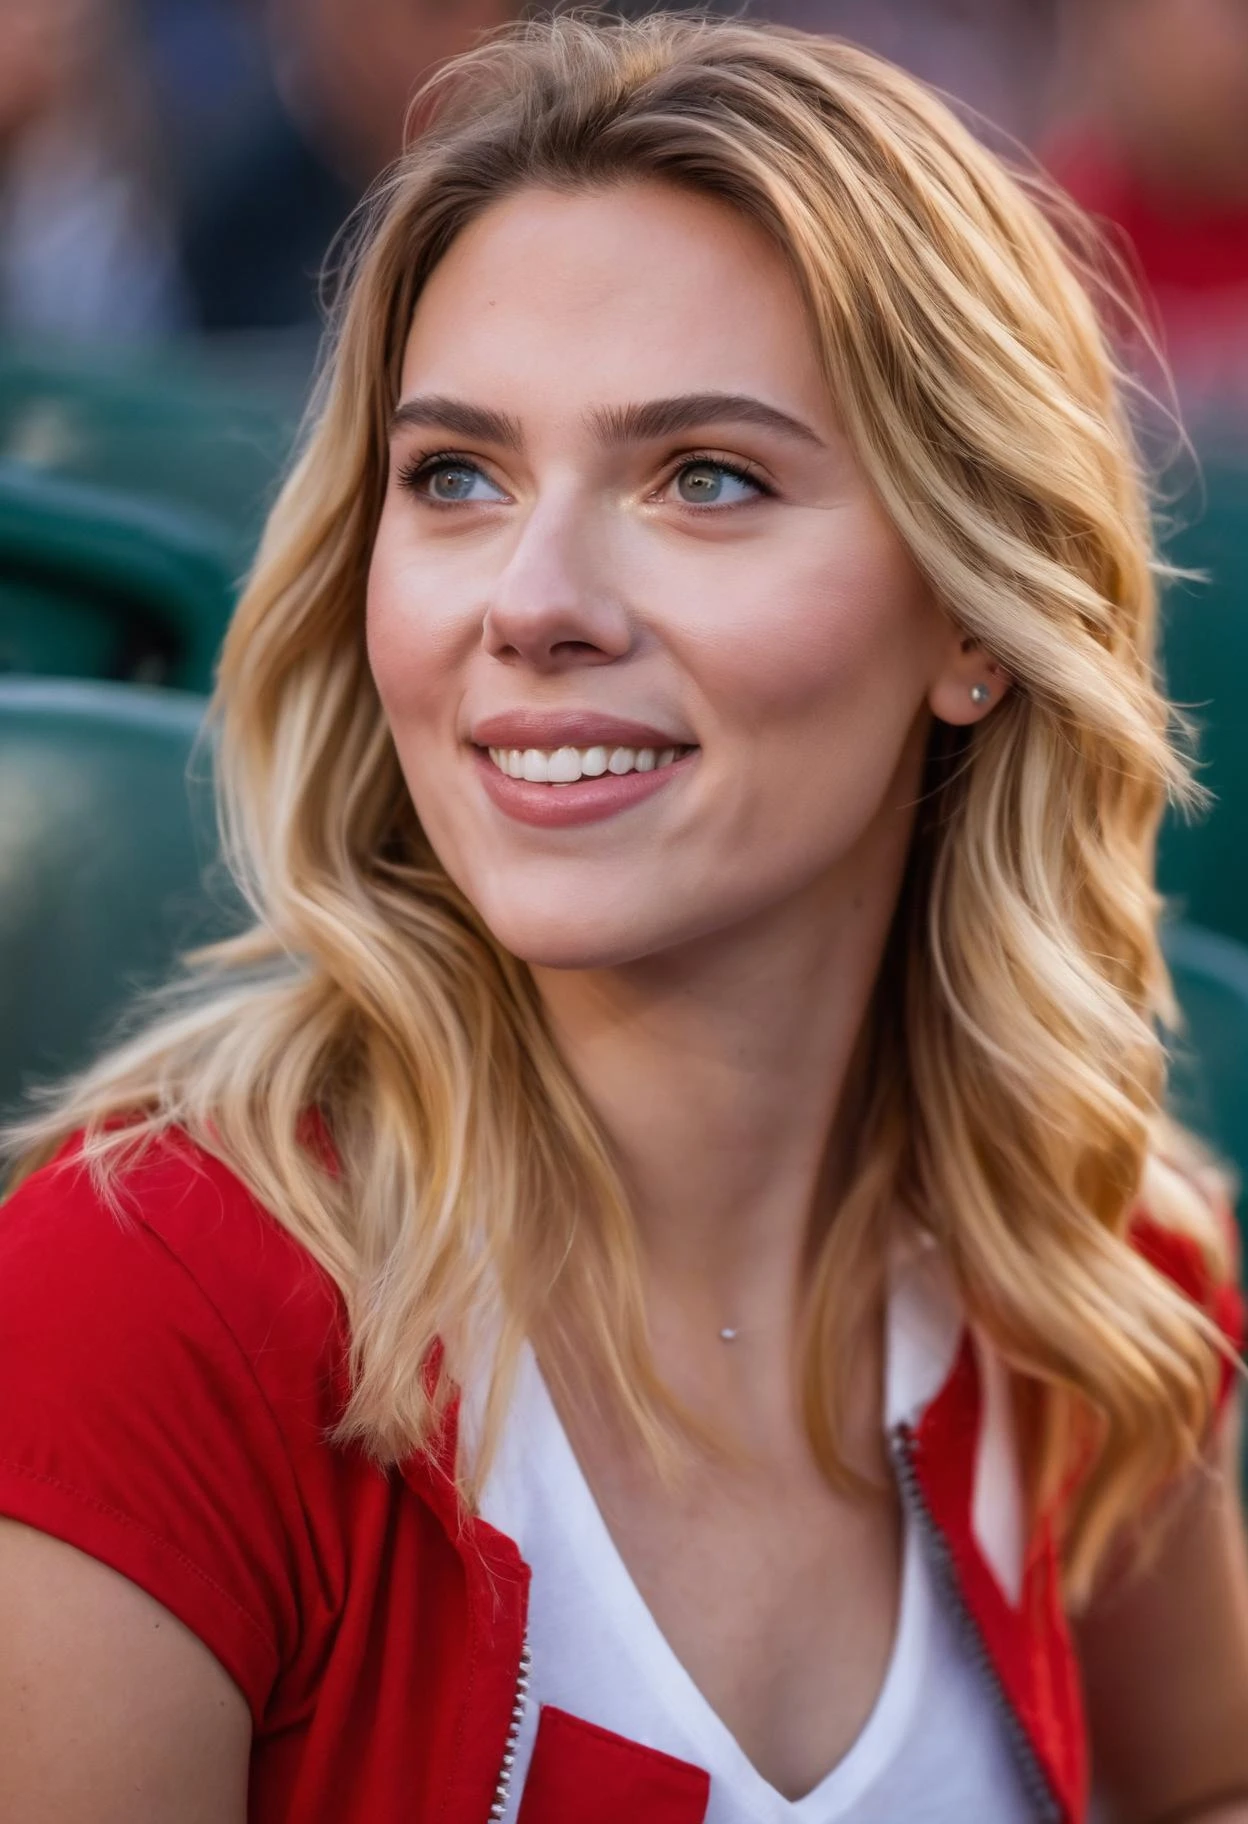 fotografia profissional em close-up do rosto de uma linda  ((ah, mulher)) no estádio de beisebol durante Crepúsculo, Nikon Z9